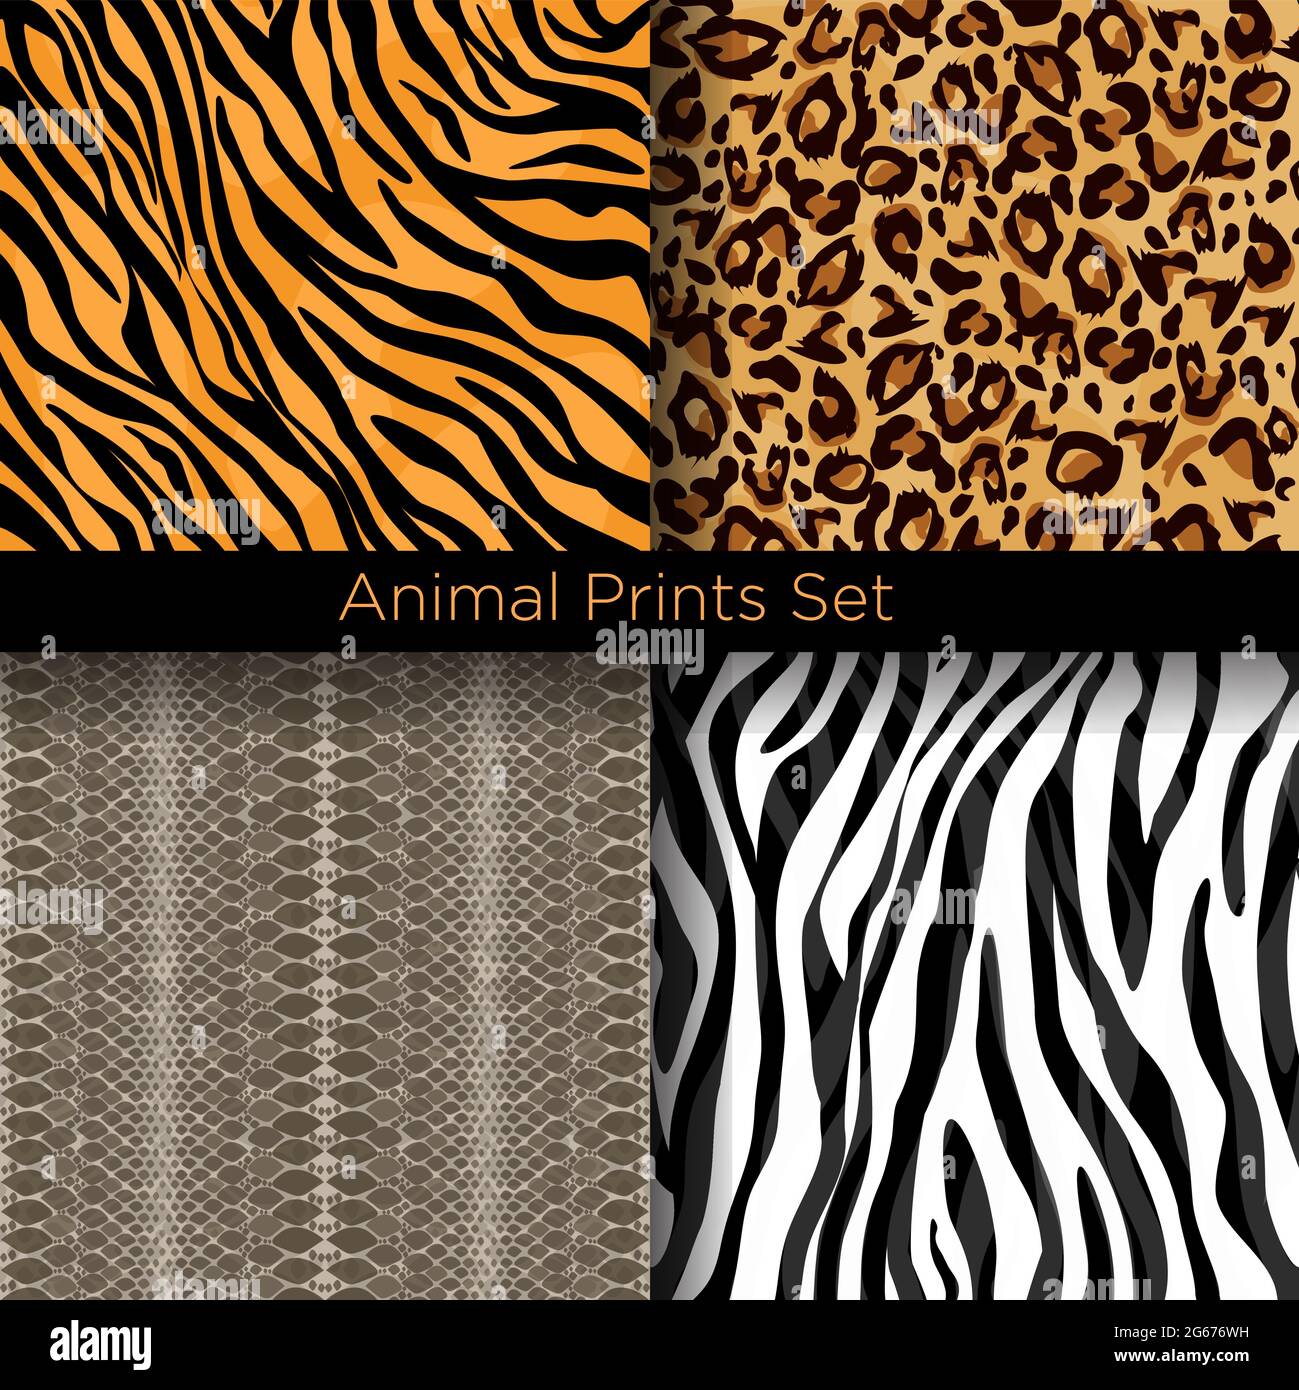 Vektor-Illustration Satz von Tierhaut nahtlose Muster. Sammlung von Mustern für Tiger-, Zebra-, Schlangen- und Leopardenhäute. Stock Vektor